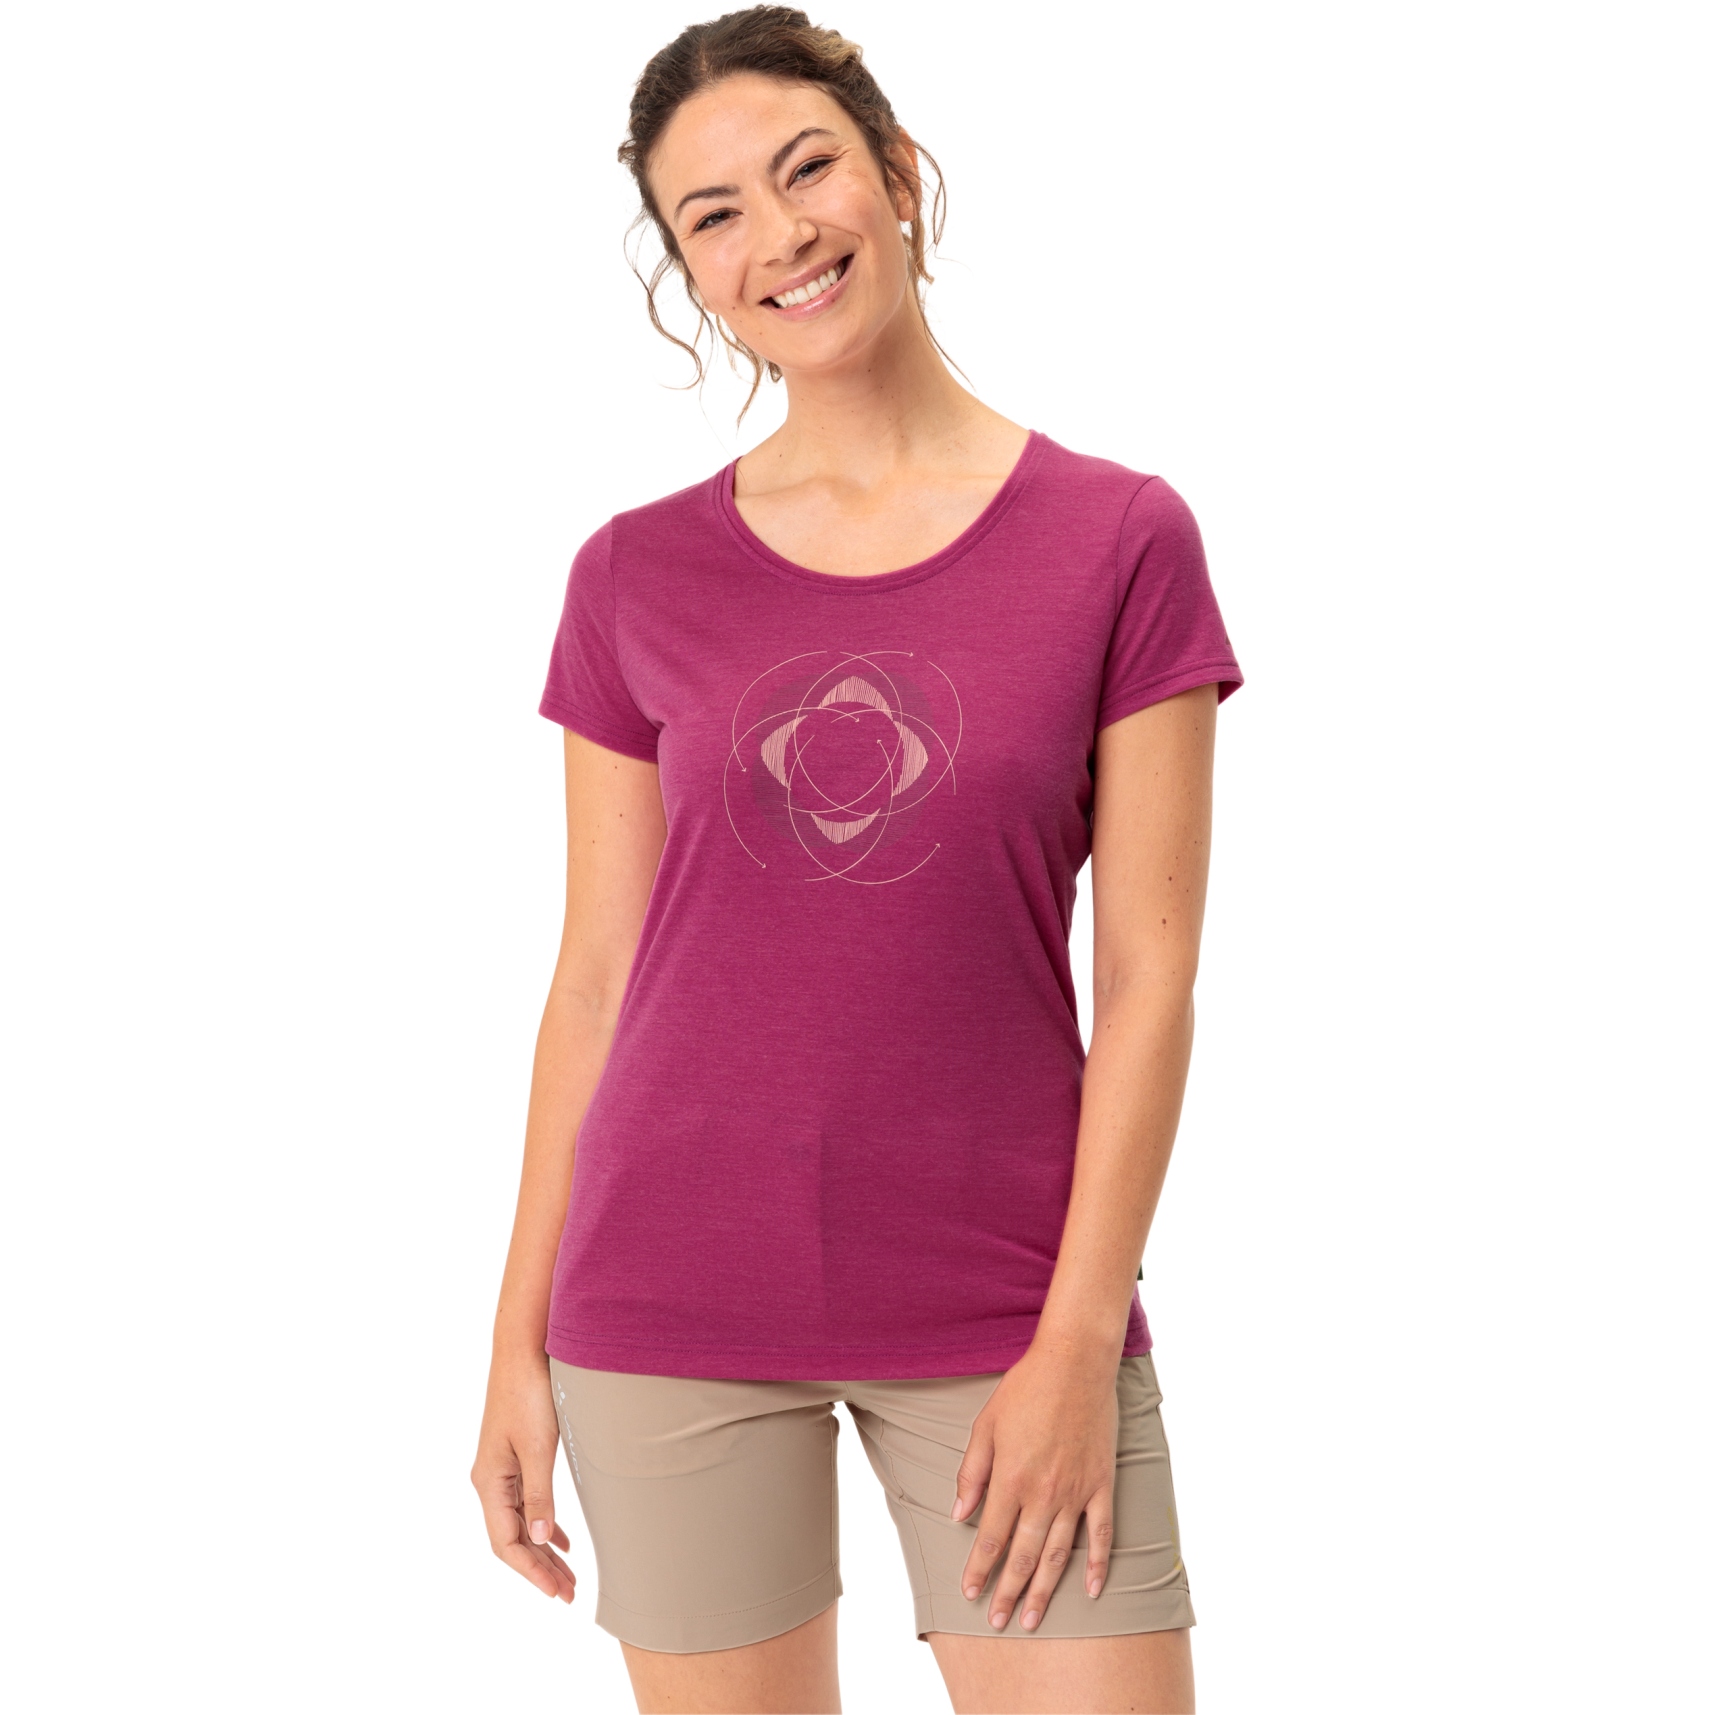 Produktbild von Vaude Skomer II Print T-Shirt Damen - rich pink